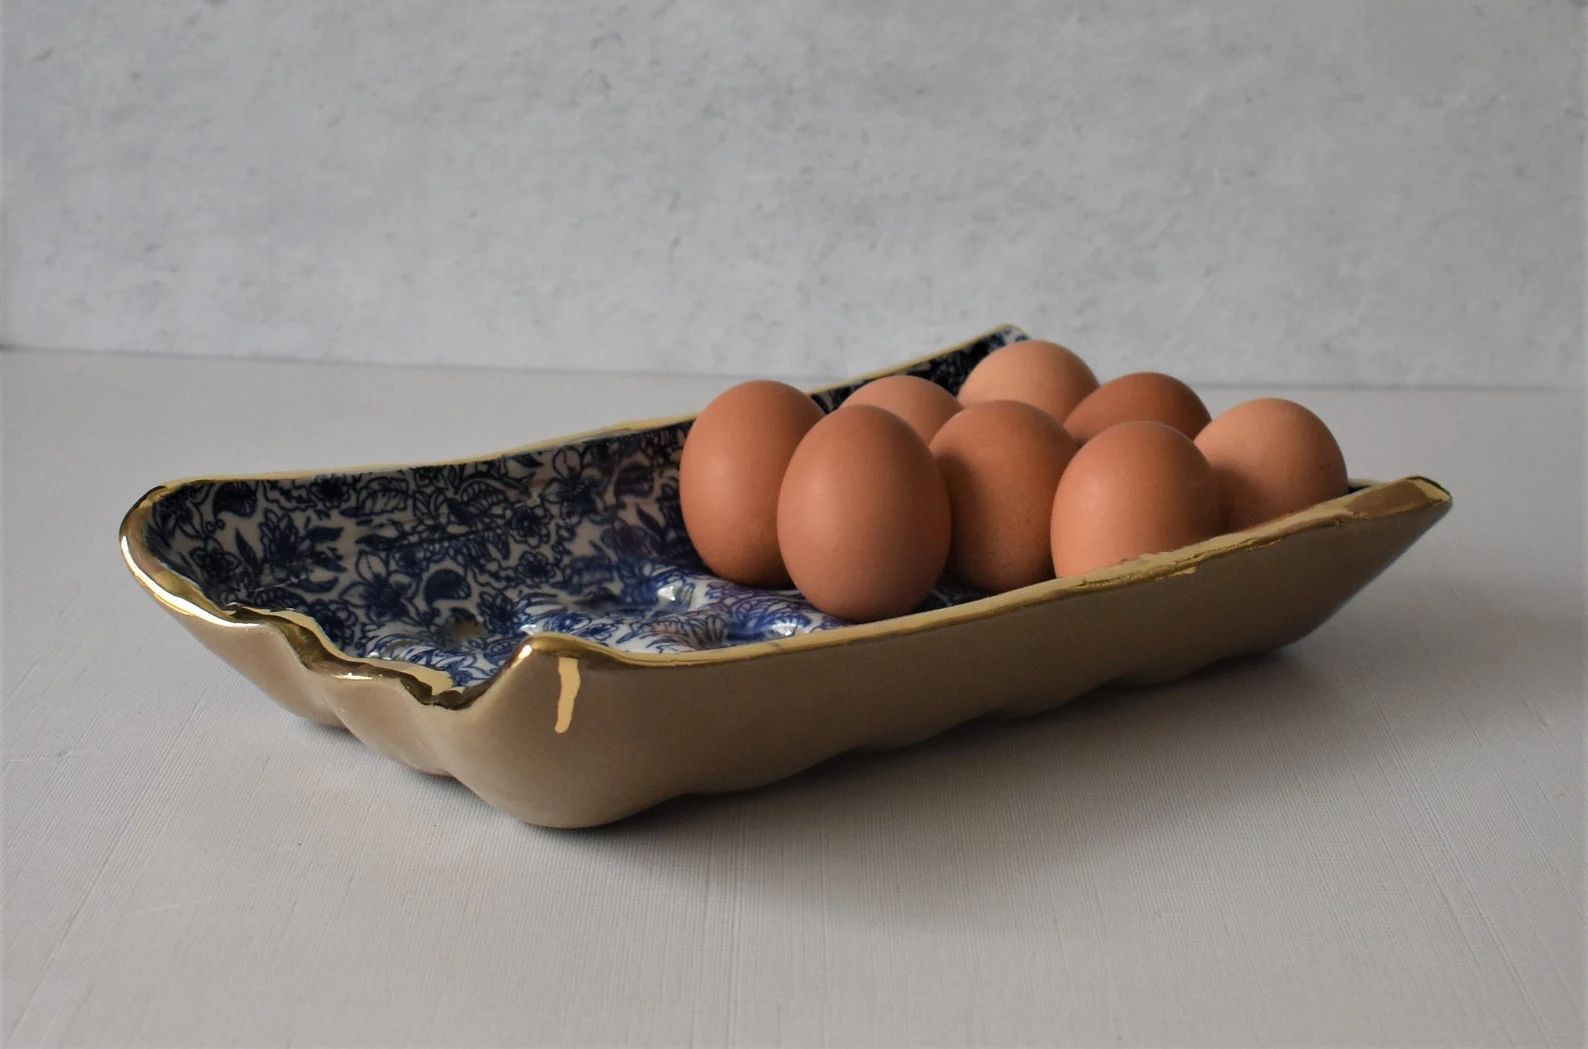 12 Compartment Ceramic Egg Tray, White